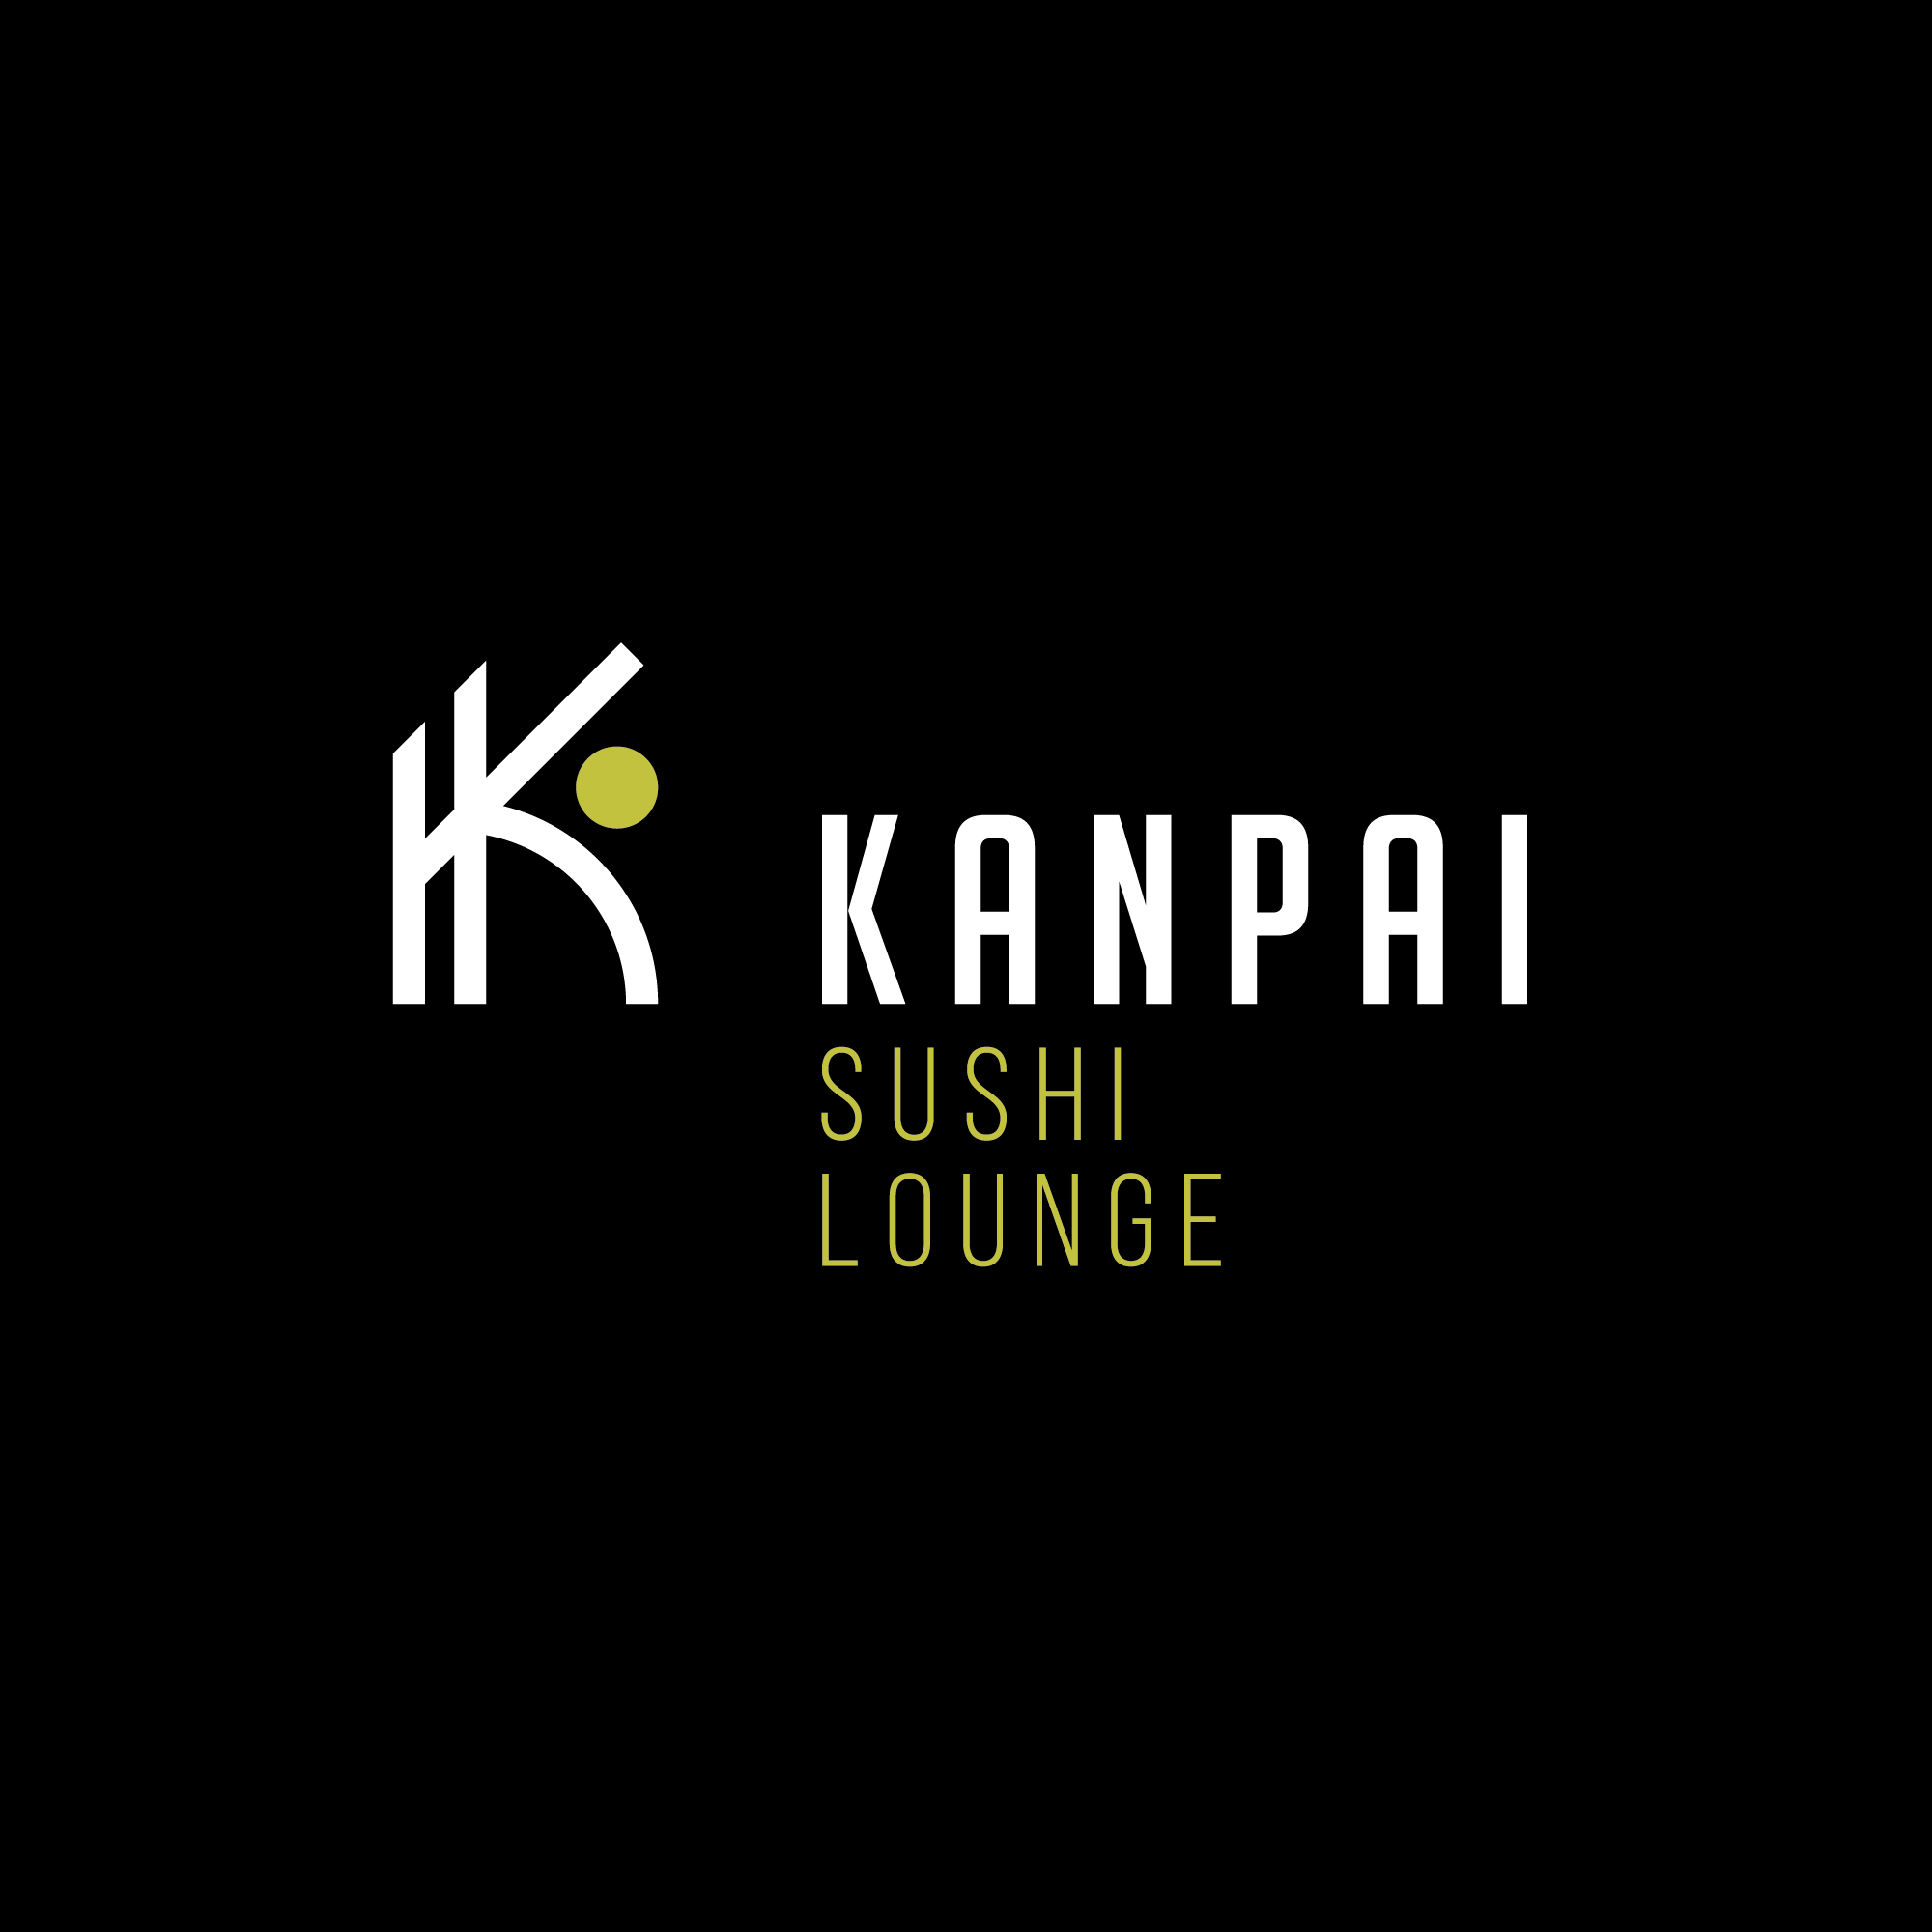 https://sconcept.be/wp-content/uploads/2022/09/kanpai-sushi-lounge-logo-dark.jpg